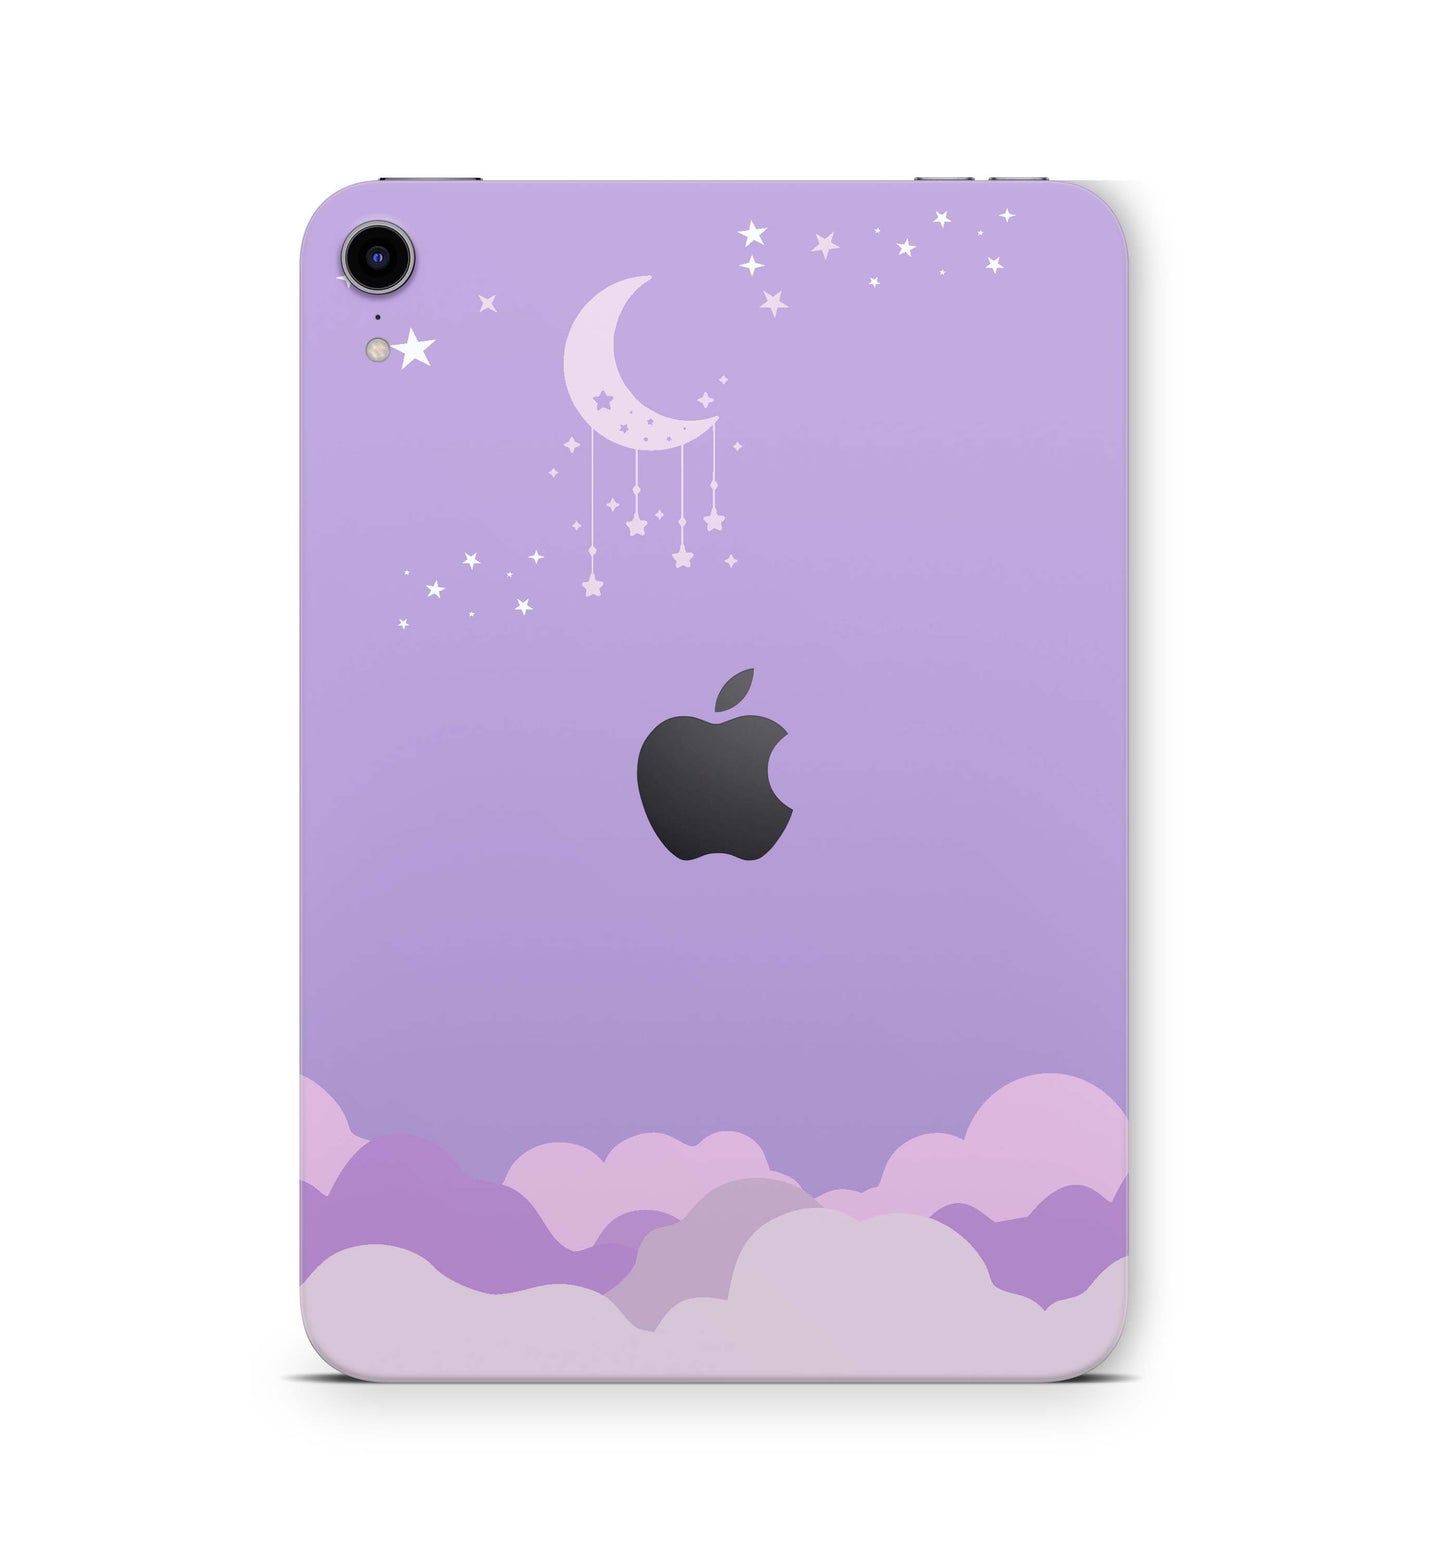 Apple iPad Skin Design Cover Folie Vinyl Skins & Wraps für alle iPad Modelle Aufkleber Skins4u Taghimmel  